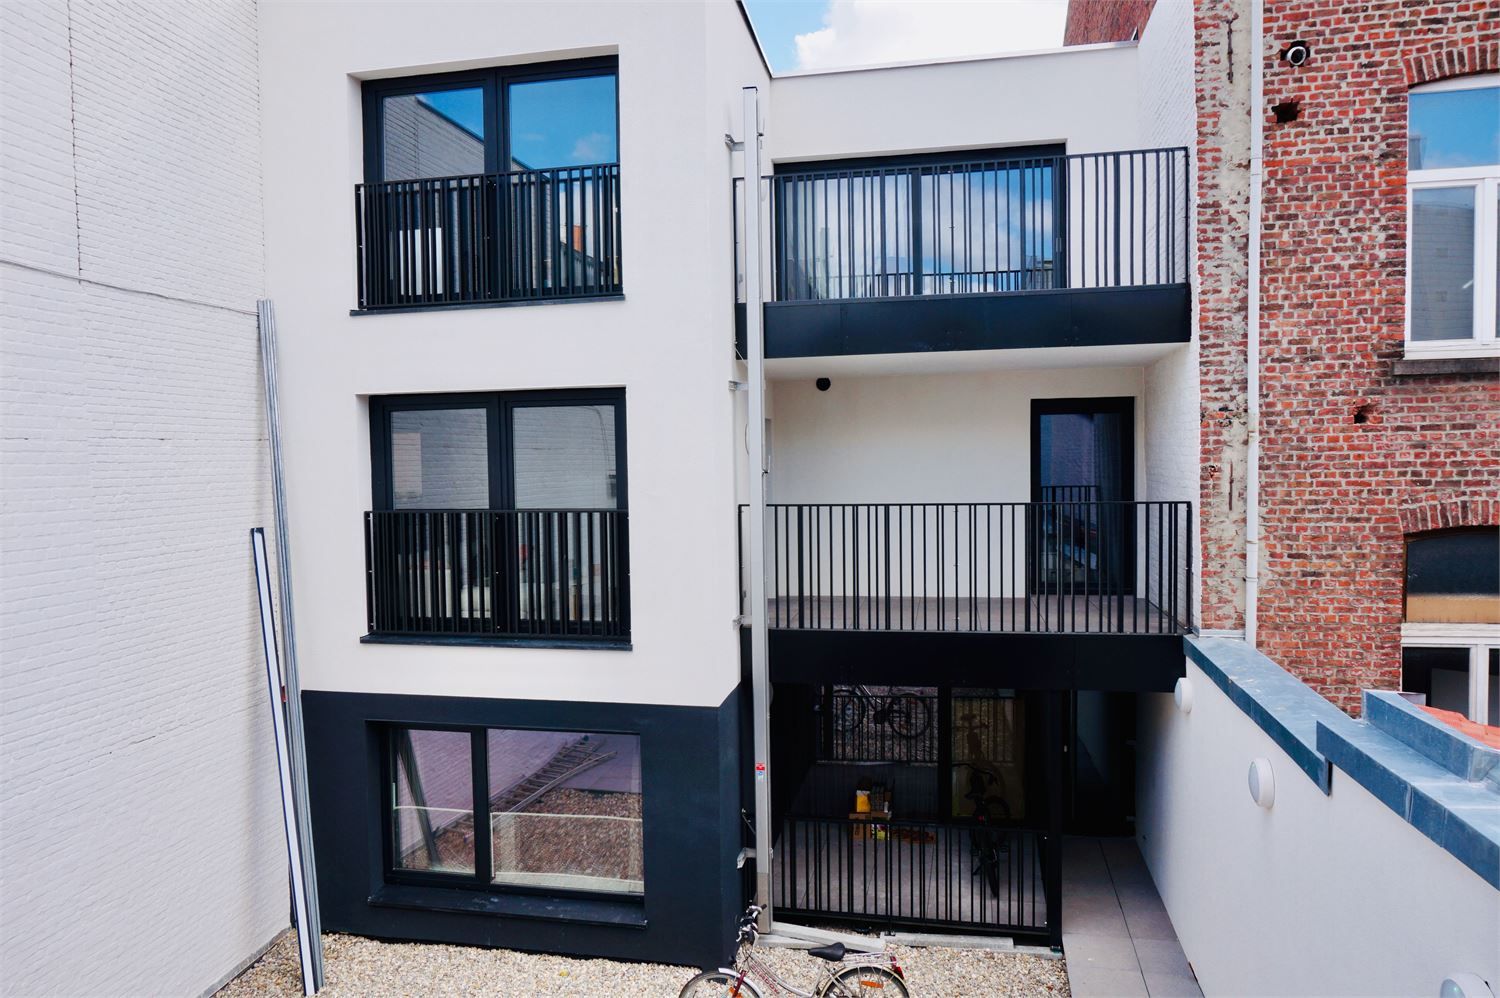 Appartement te huur Diestsestraat 89/0202 - 3000 Leuven